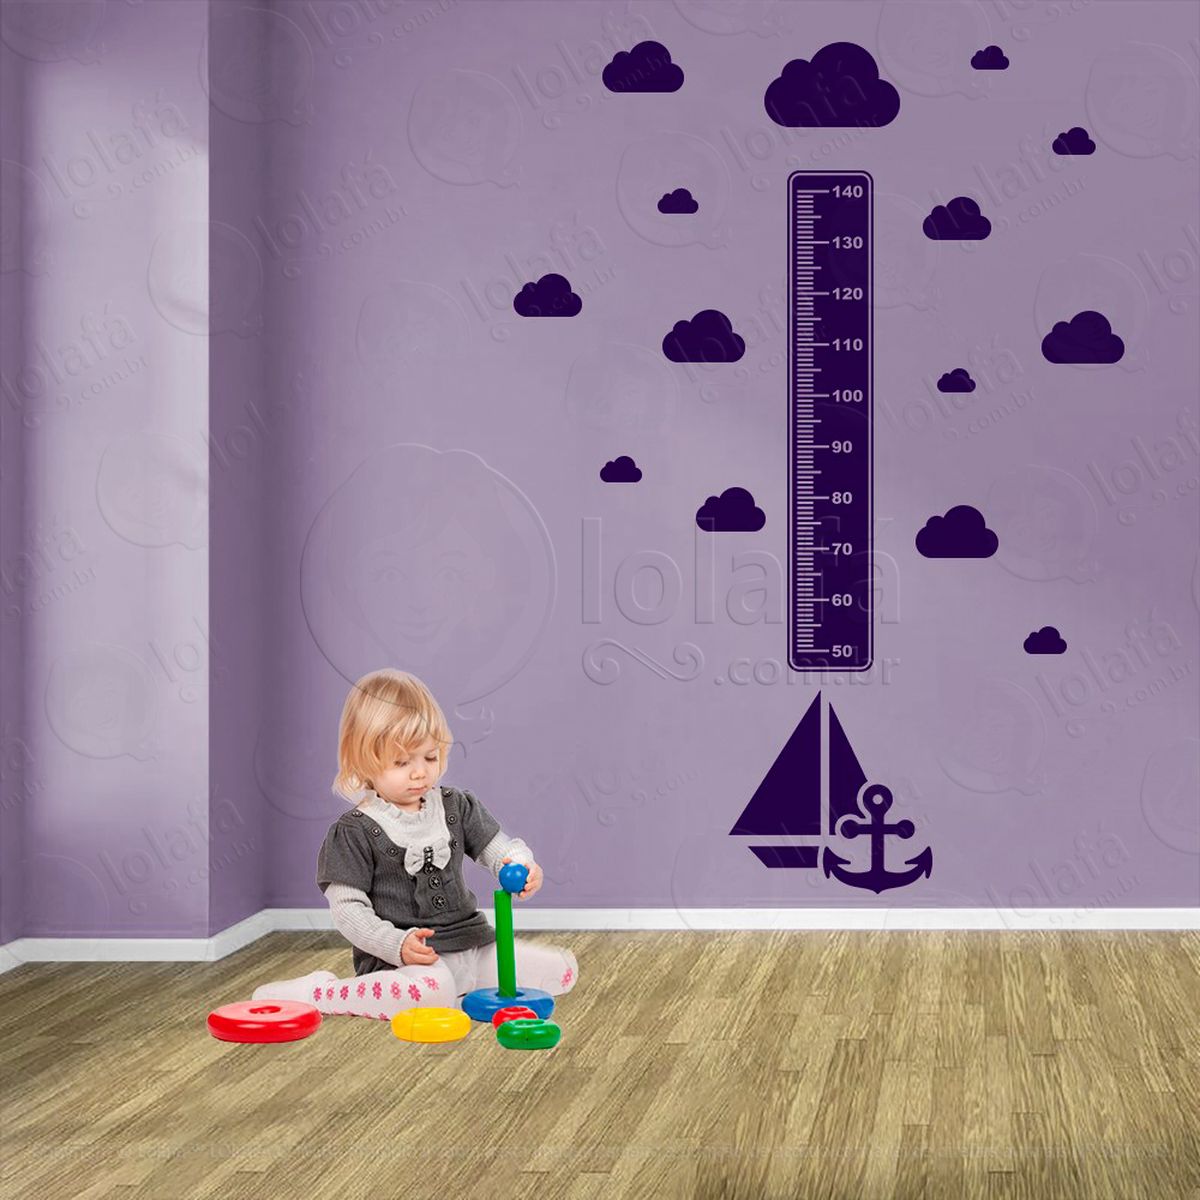 barco e nuvens adesivo régua de crescimento infantil, medidor de altura para quarto, porta e parede - mod:1126